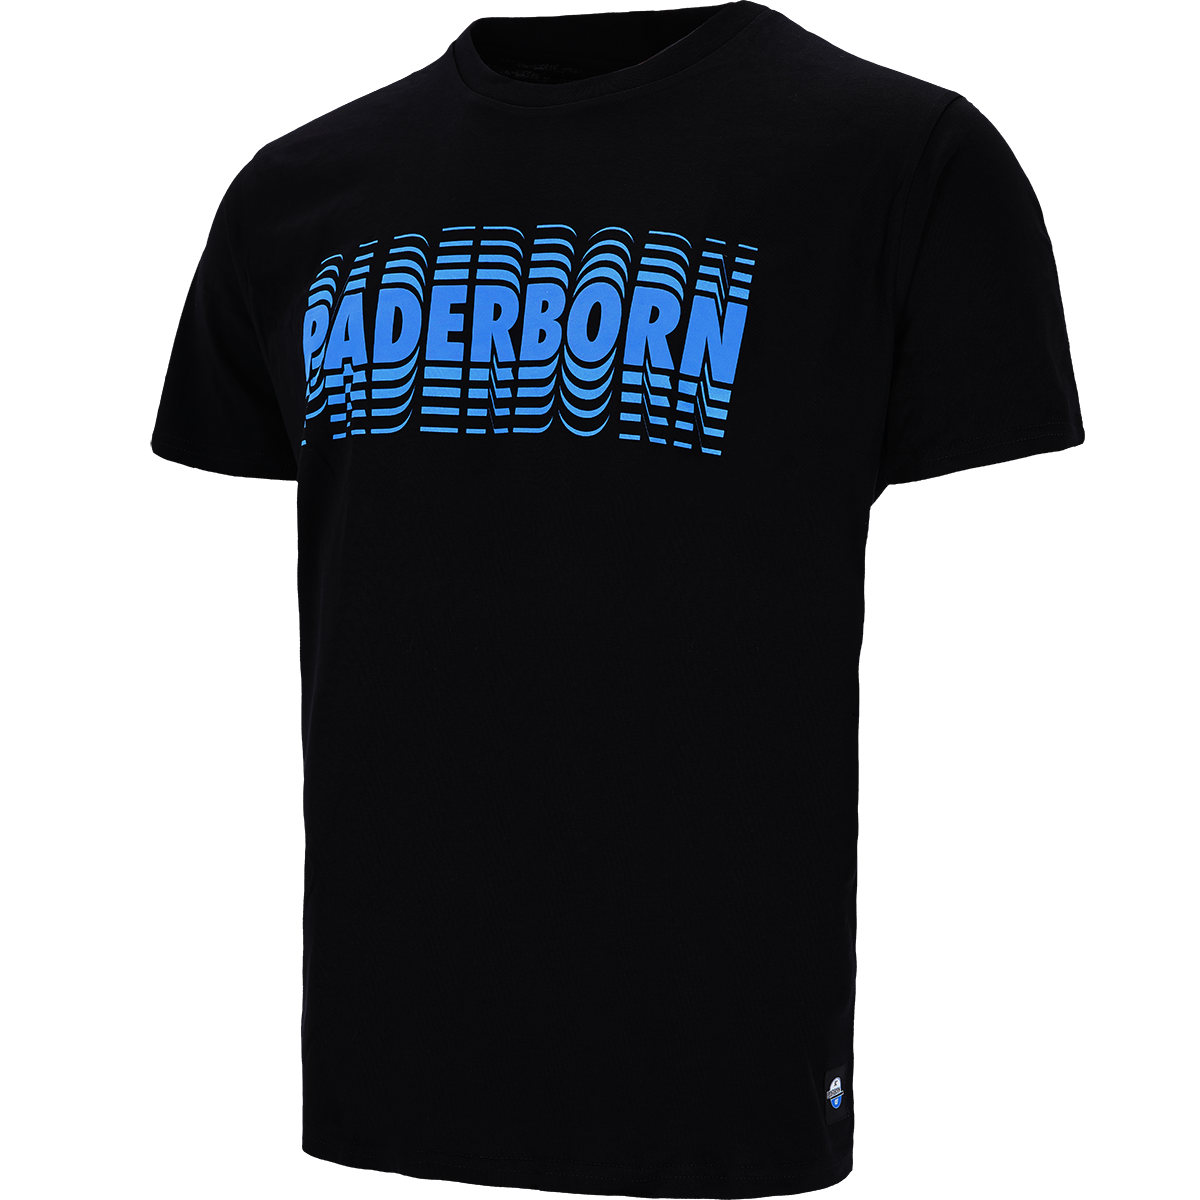 T-Shirt Paderborn